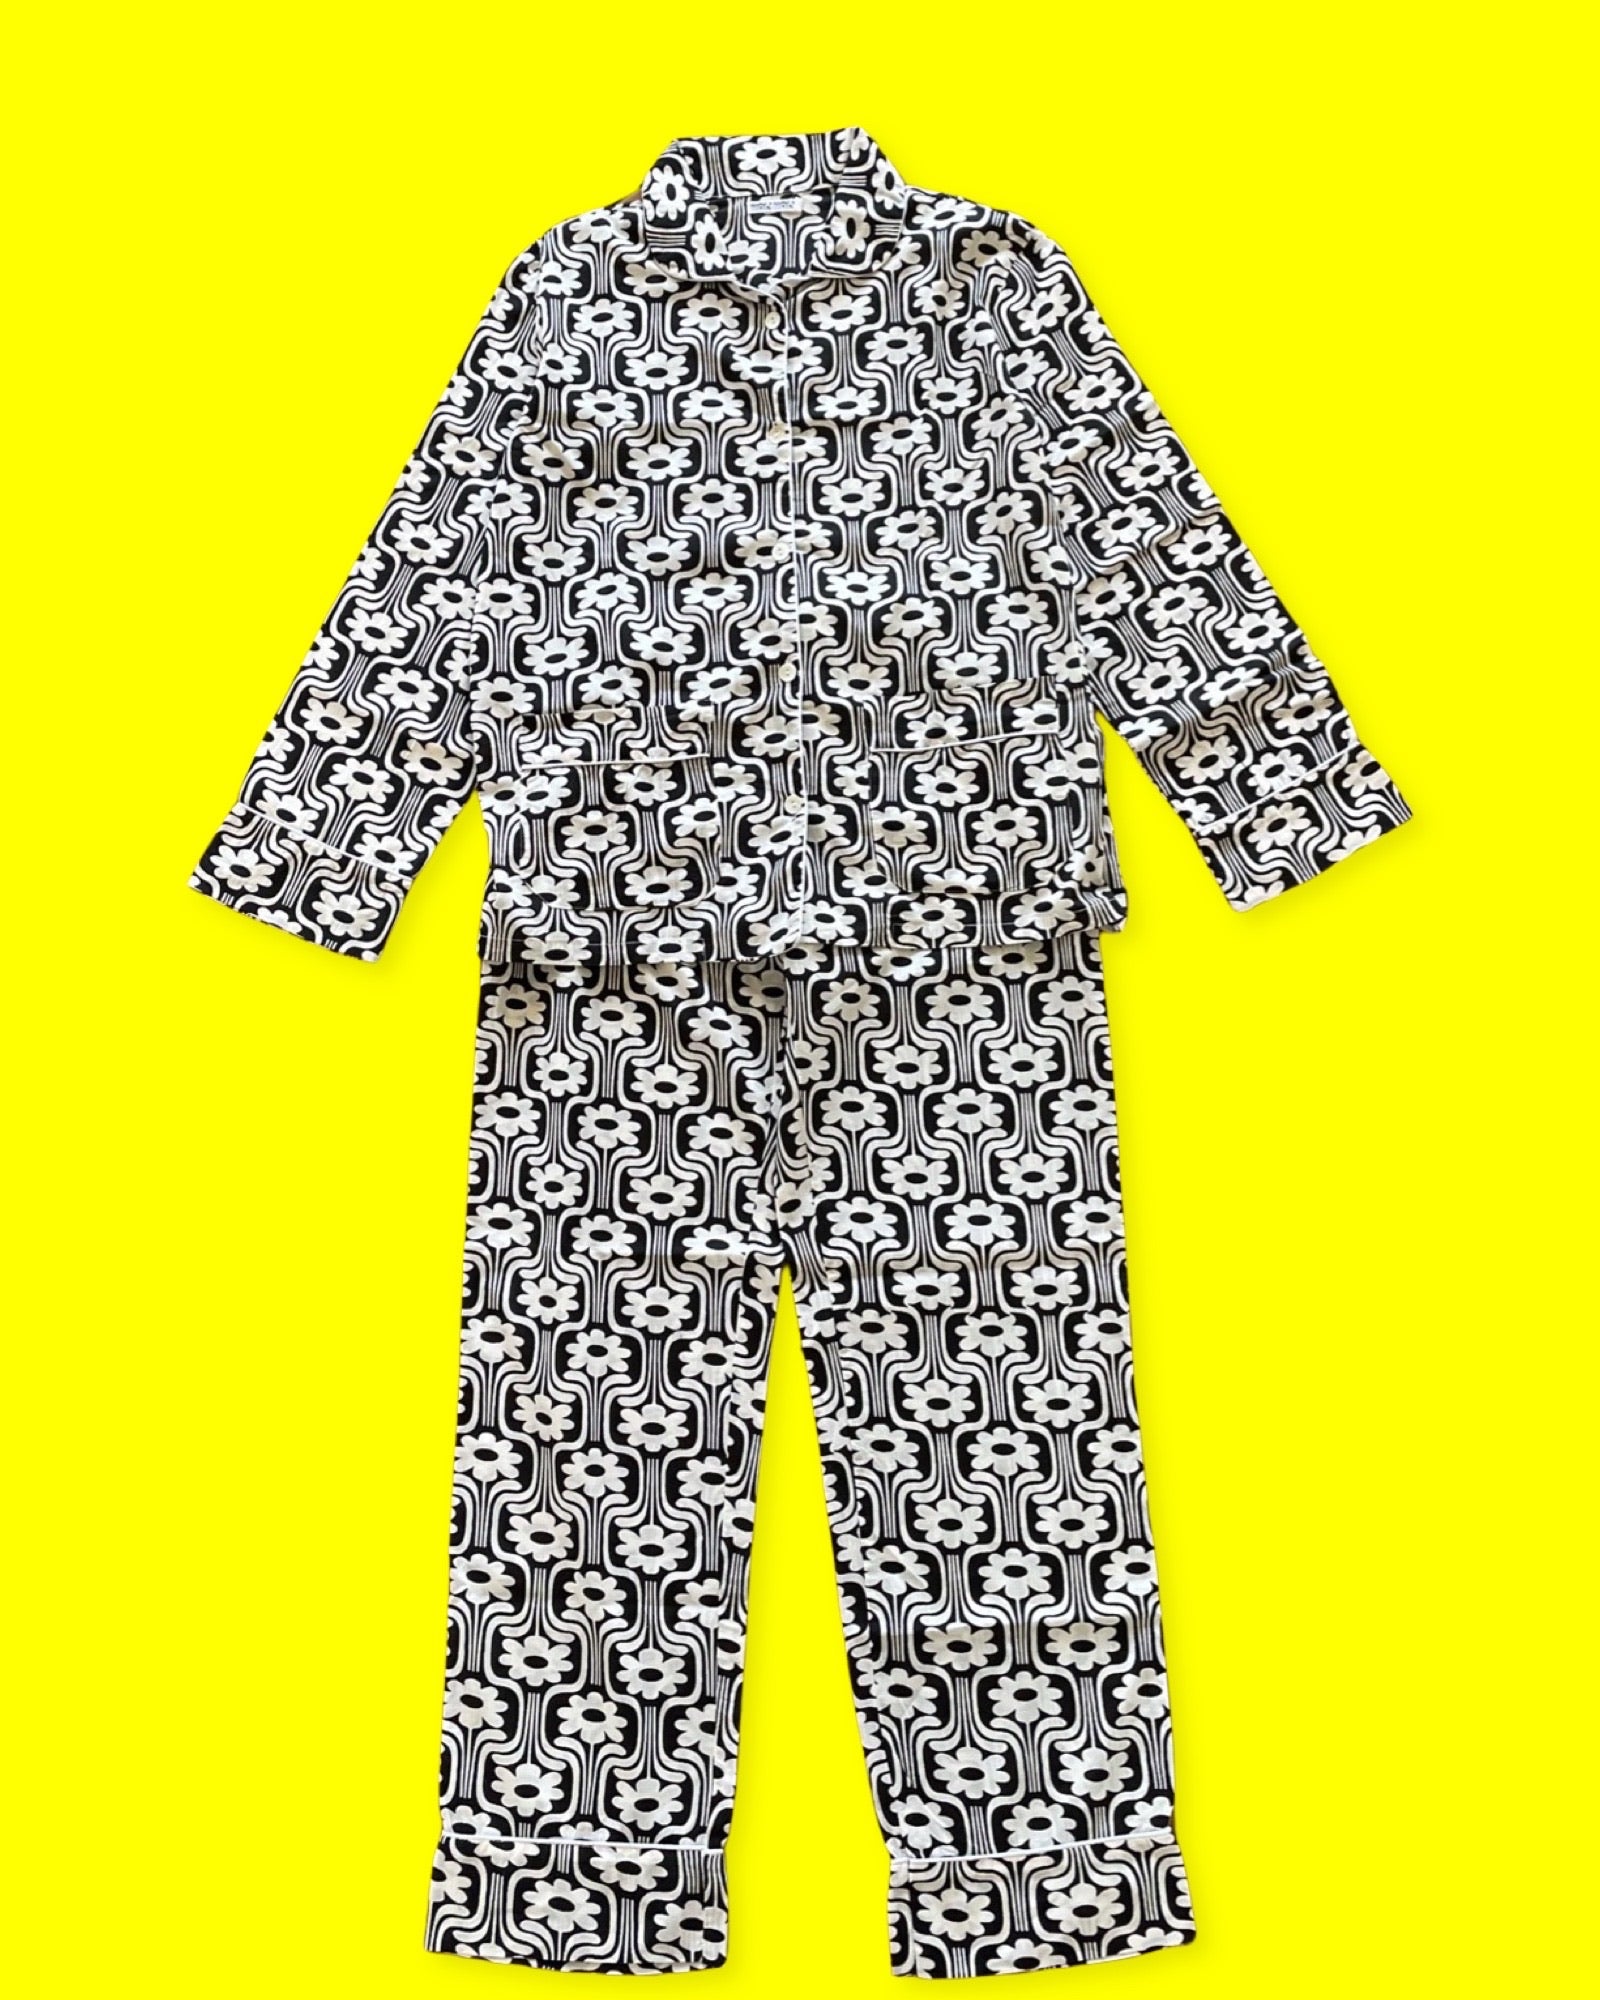 Notre pyjama pour femme 70's est un ensemble composé d'un haut boutonné à manches longues avec deux poches et d'un pantalon à taille élastique et à lien. L'imprimé est rétro vec des fleurs blanches sur fond noir, et le liseré est blanc. La photo le présente sur fond jaune.